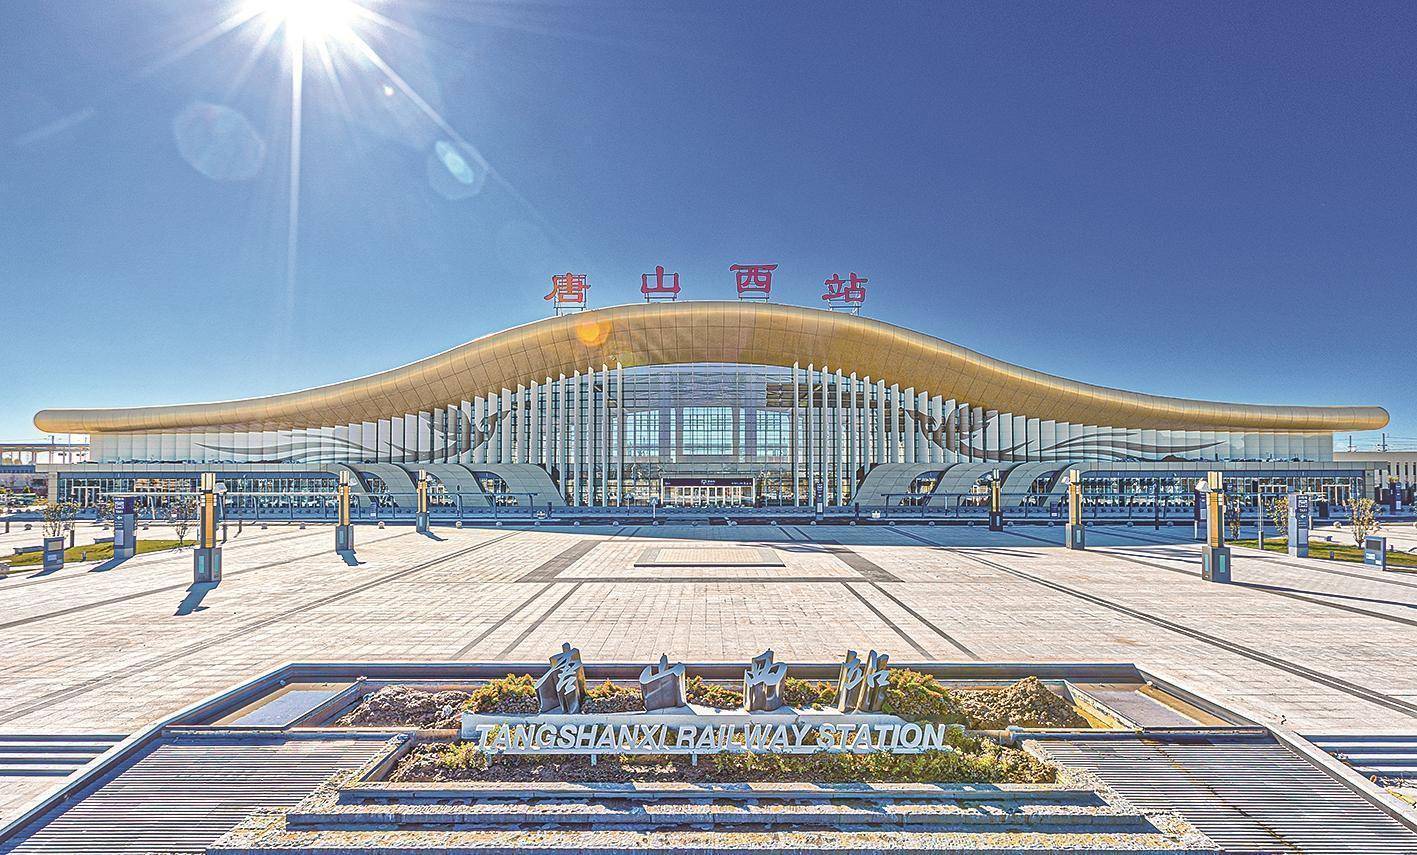 唐山火车站布局图图片